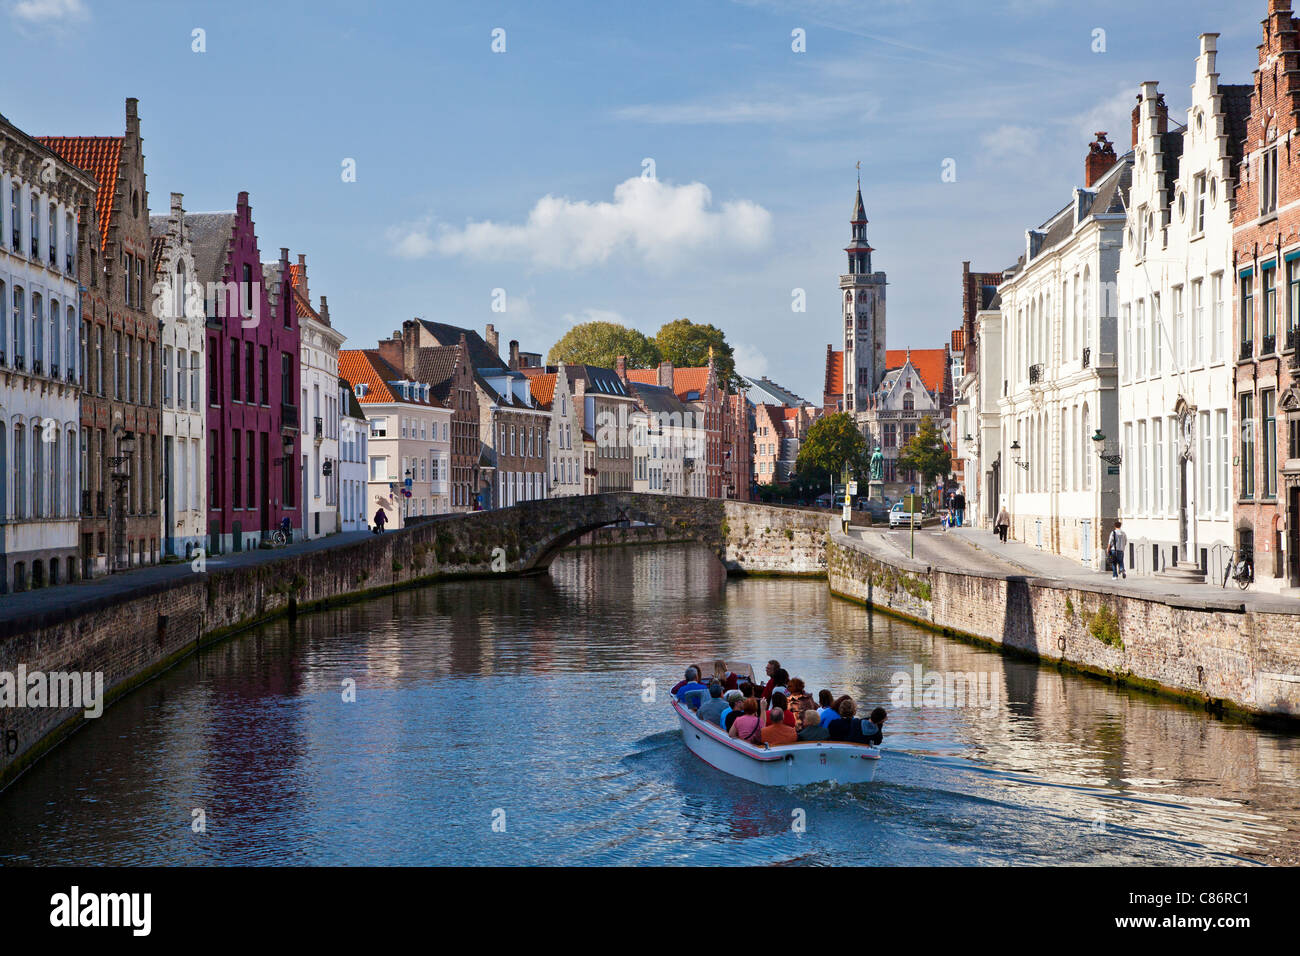 Touristenboot auf dem Kanal entlang der Spinolarei und Spiegelrei in Bruges,(Brugge), Belgien mit der Poortersloge in der Ferne. Stockfoto